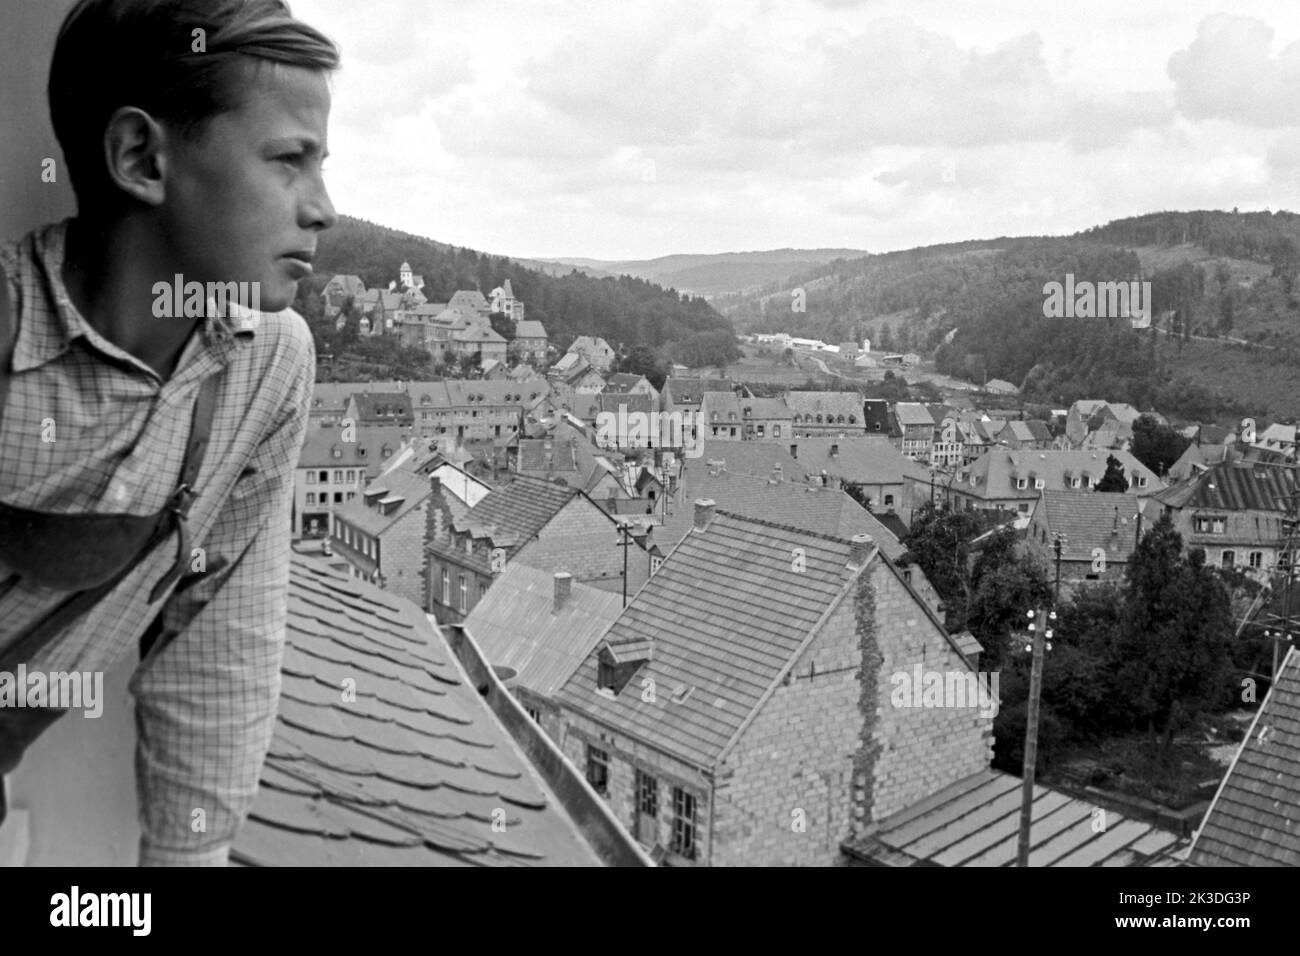 Junge im Fenster blickt über Prüm in der Eifel, vers 1952. Garçon regardant par une fenêtre sur Prüm, région d'Eifel, vers 1952. Banque D'Images